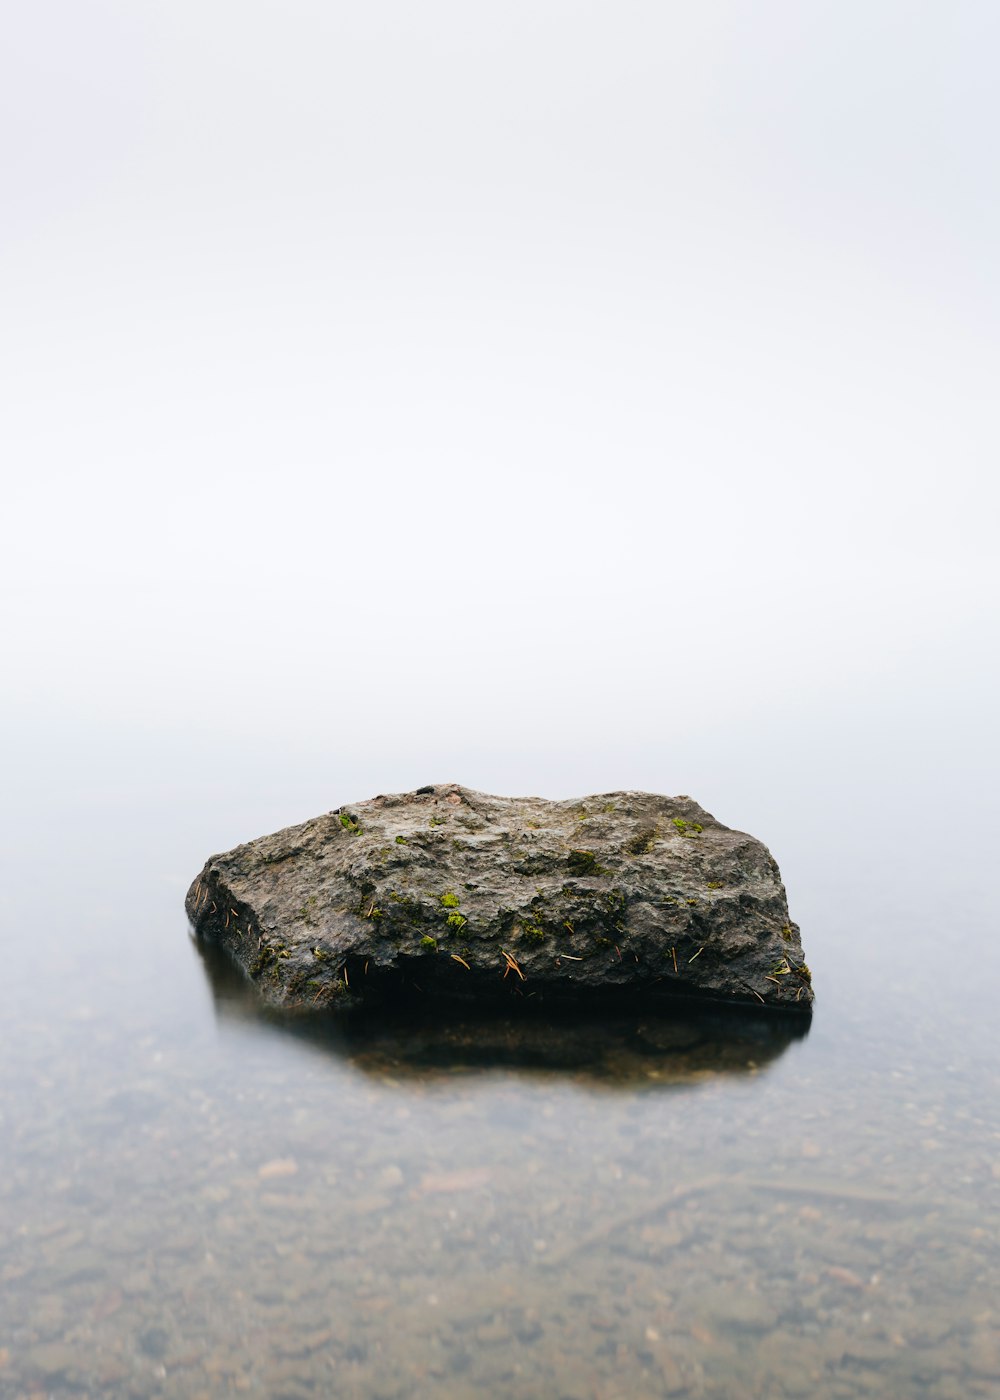 pedra marrom no corpo da água calma